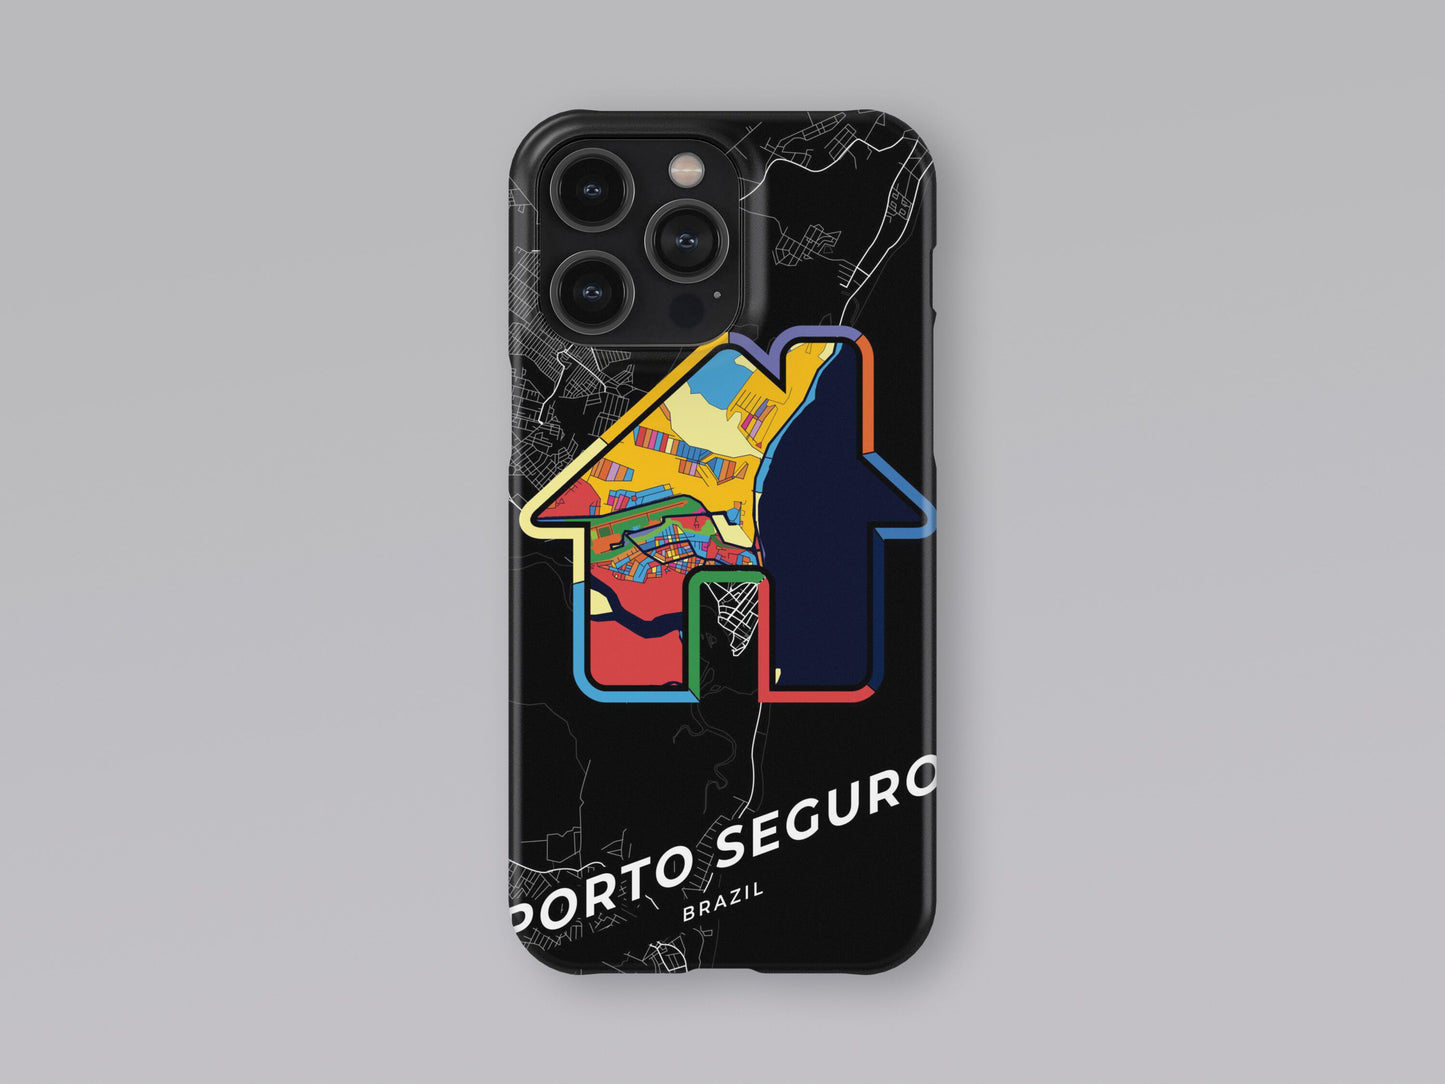 Porto Seguro Brazil slim phone case with colorful icon 3